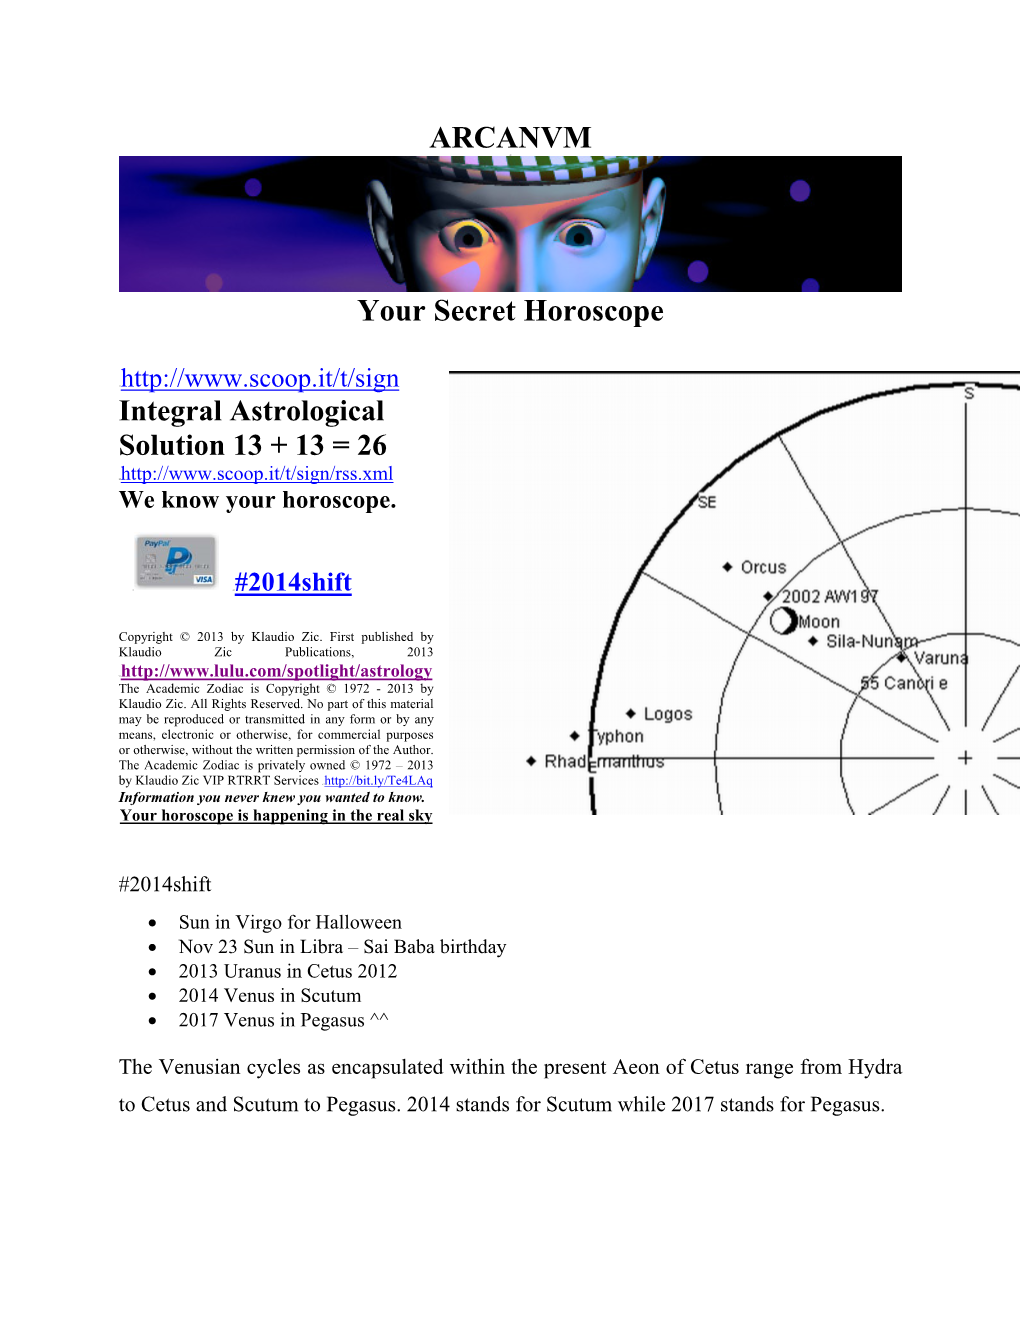 ARCANVM Your Secret Horoscope Integral Astrological Solution 13 +